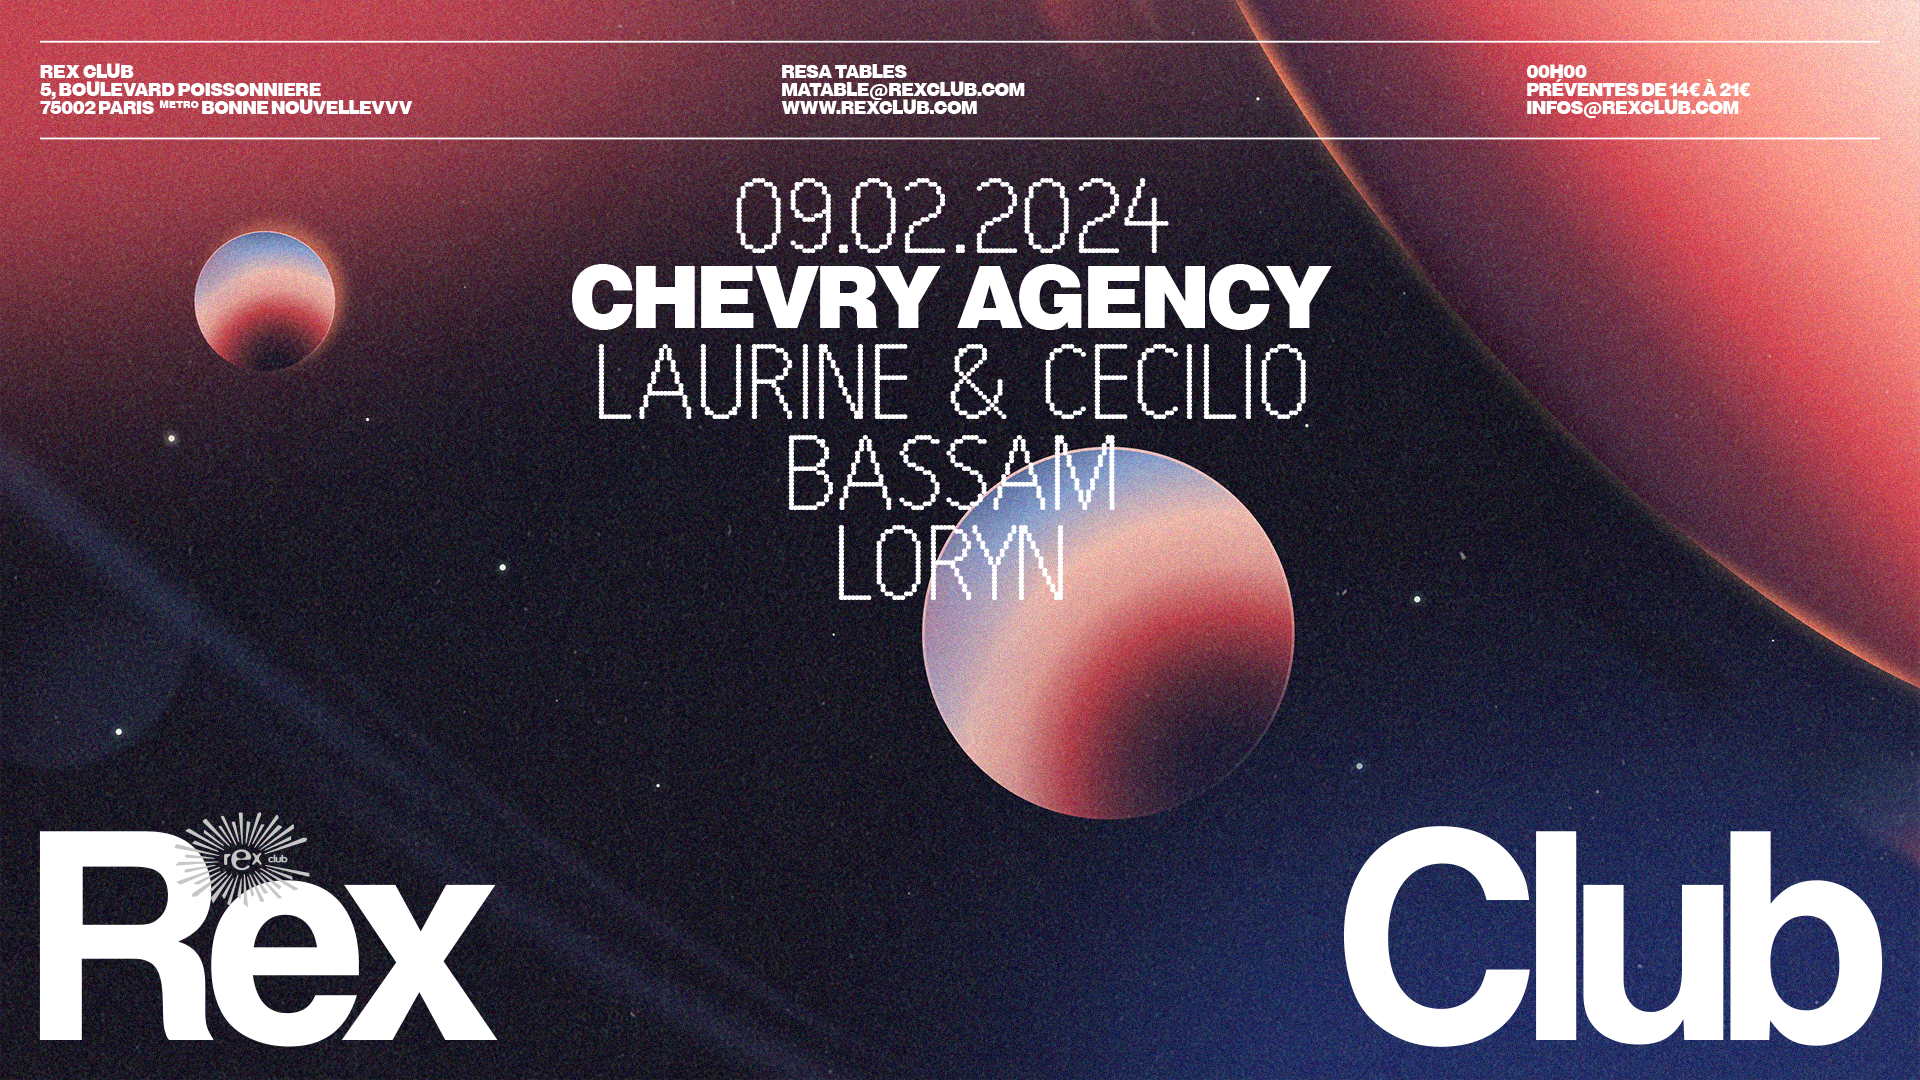 Chevry Agency: Laurine & Cecilio, Bassam, Loryn - Página frontal